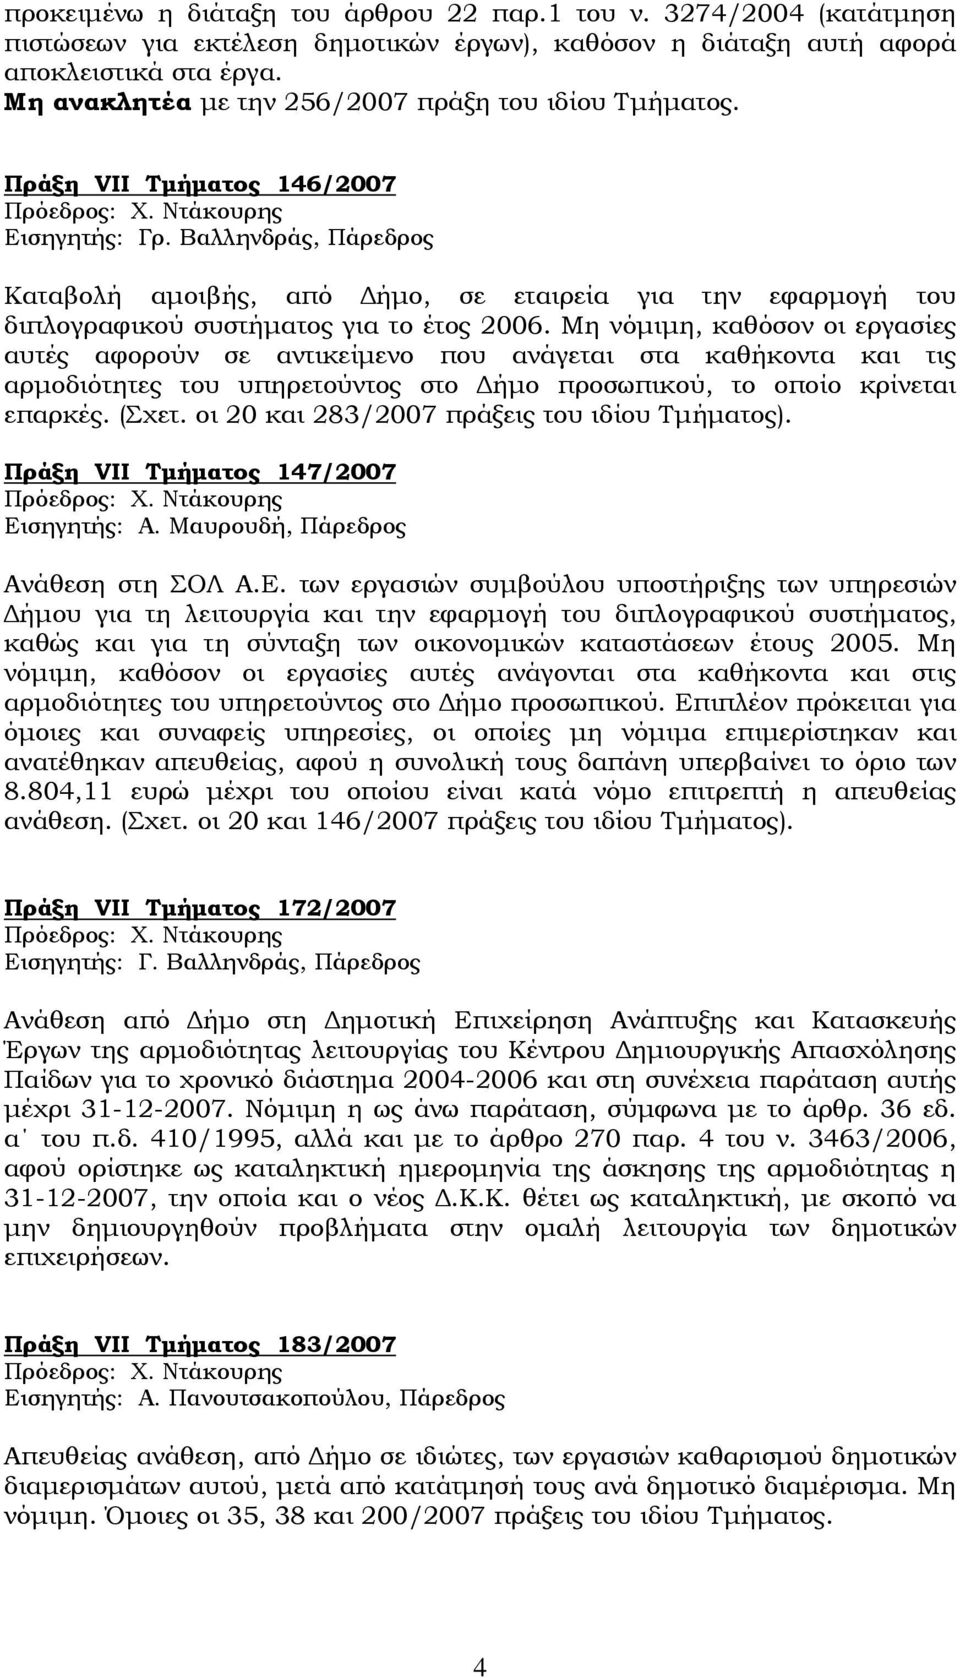 Βαλληνδράς, Πάρεδρος Καταβολή αμοιβής, από Δήμο, σε εταιρεία για την εφαρμογή του διπλογραφικού συστήματος για το έτος 2006.